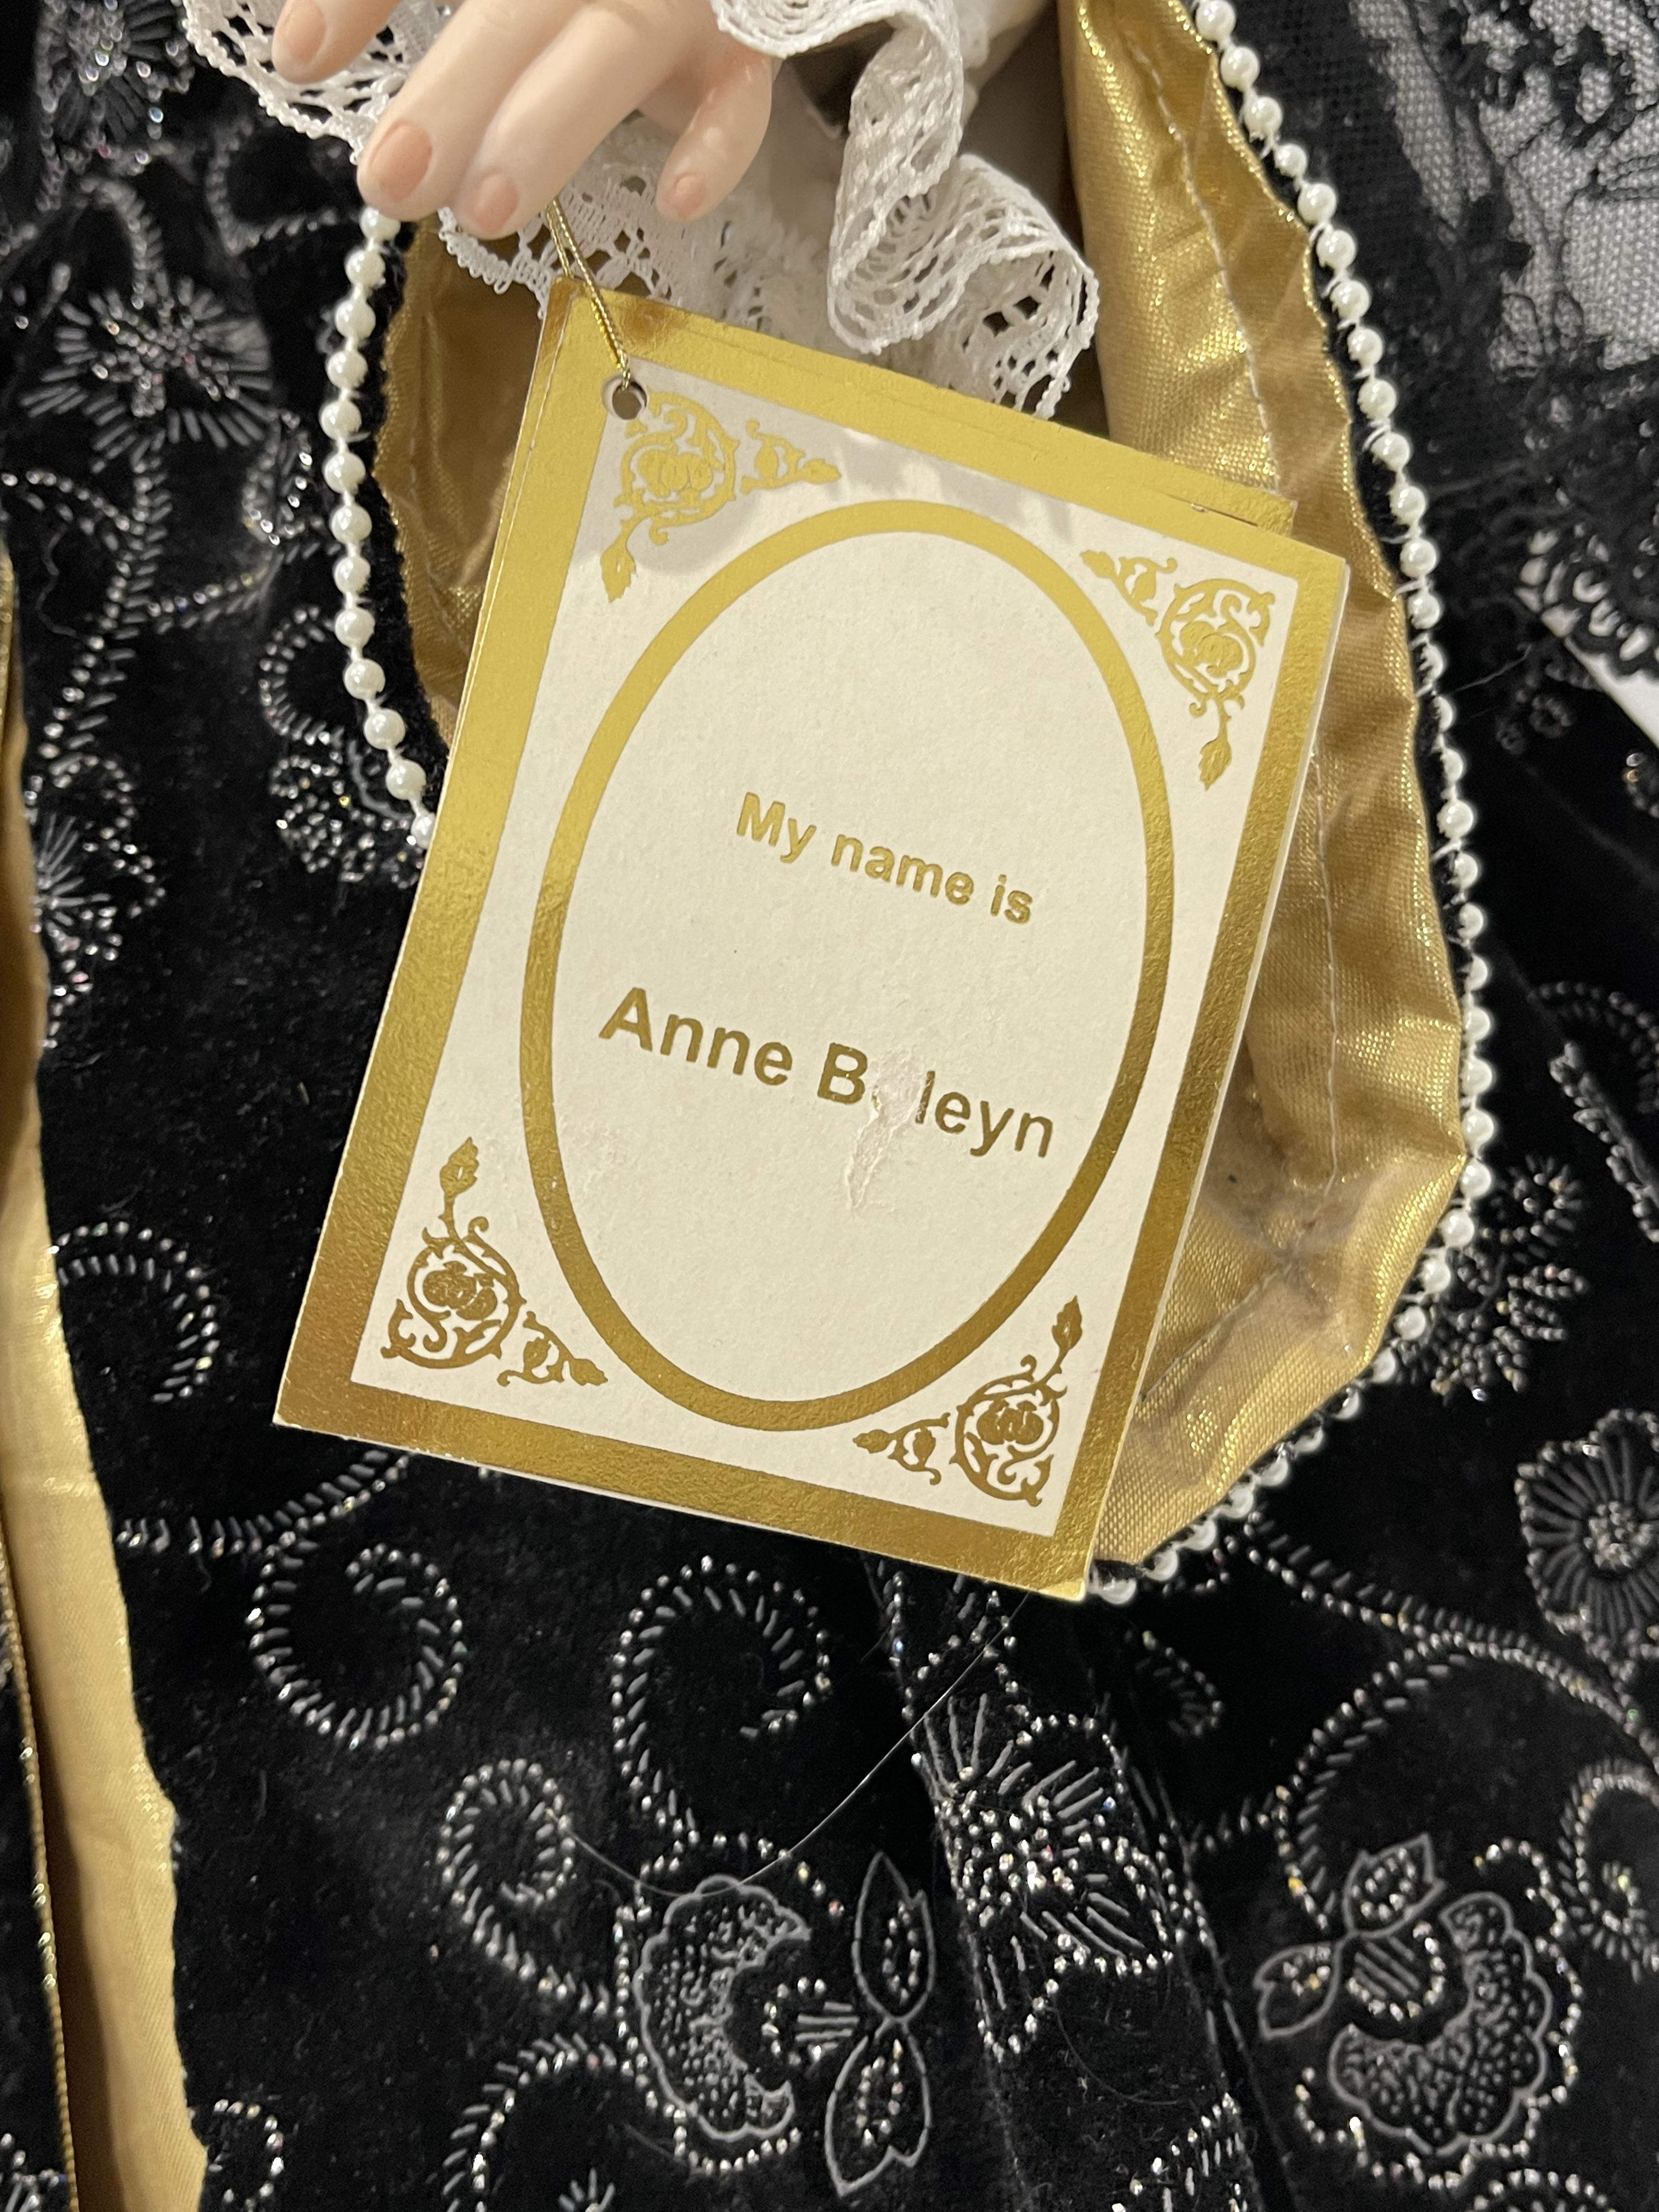 Alberton Limited Edition Anne Boleyn Porcelain Dol - Image 5 of 21